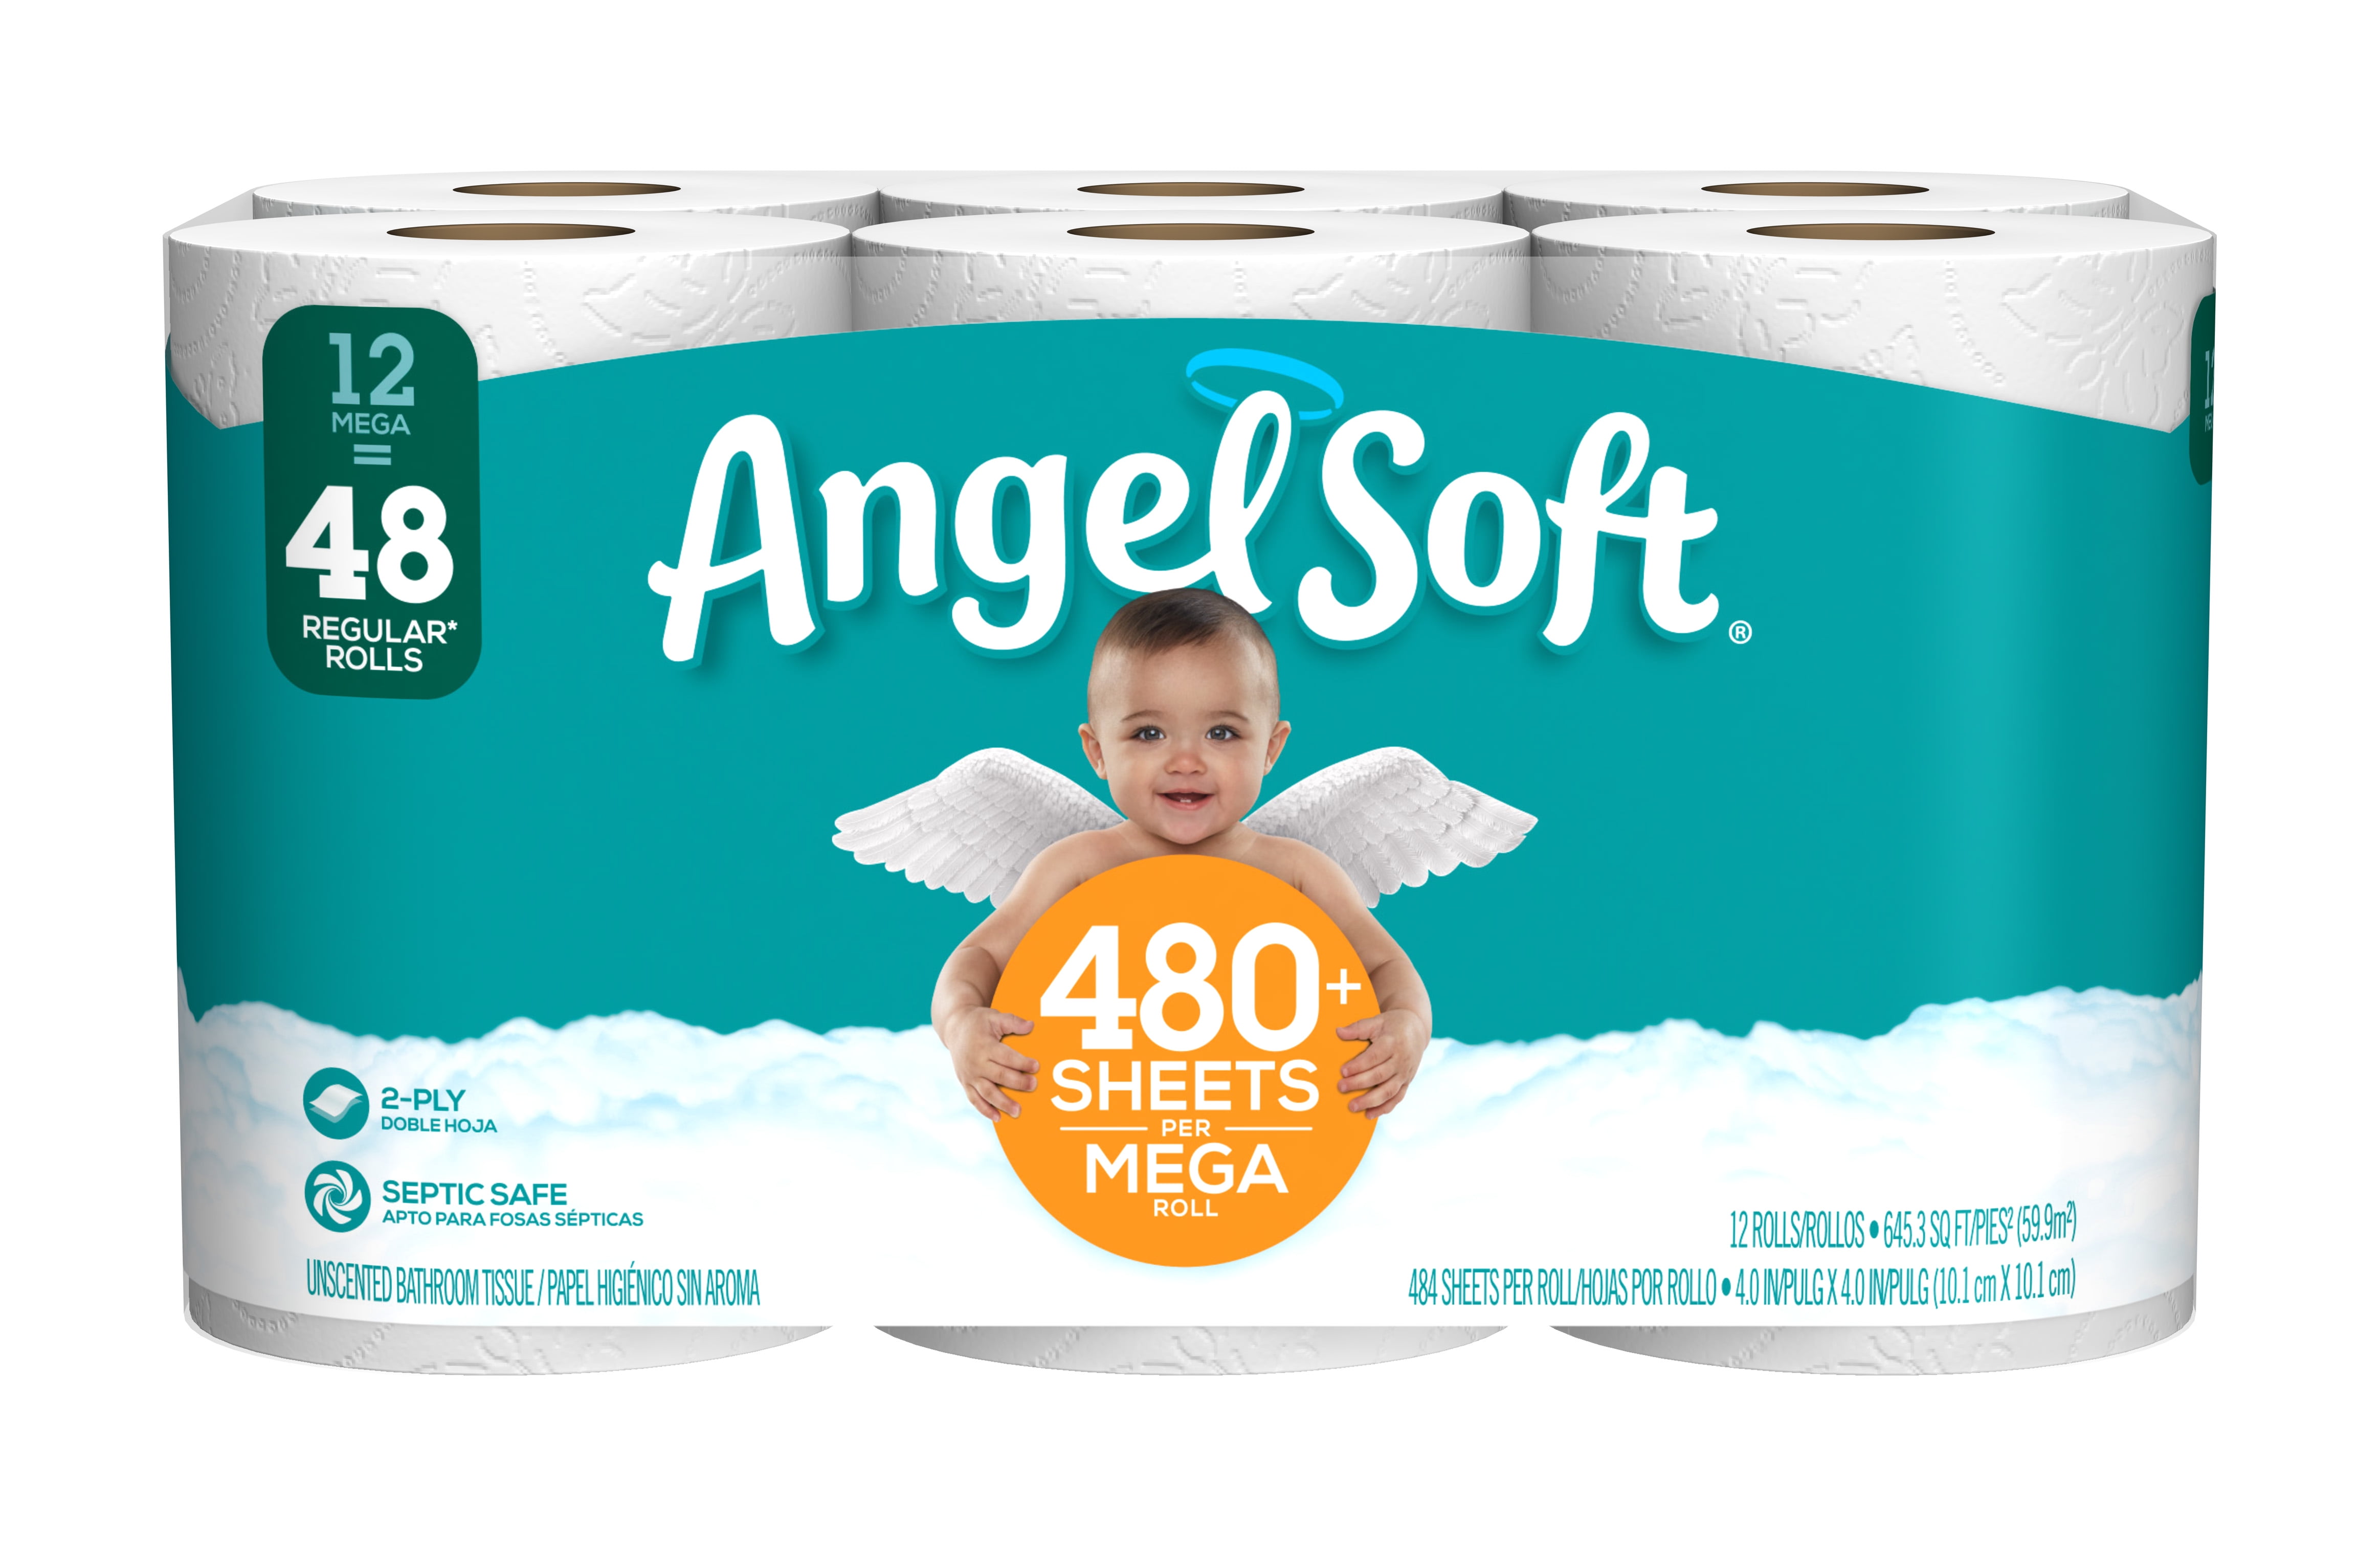 Angel Soft 791565 12 Mega Rolls Toilet Paper for sale online